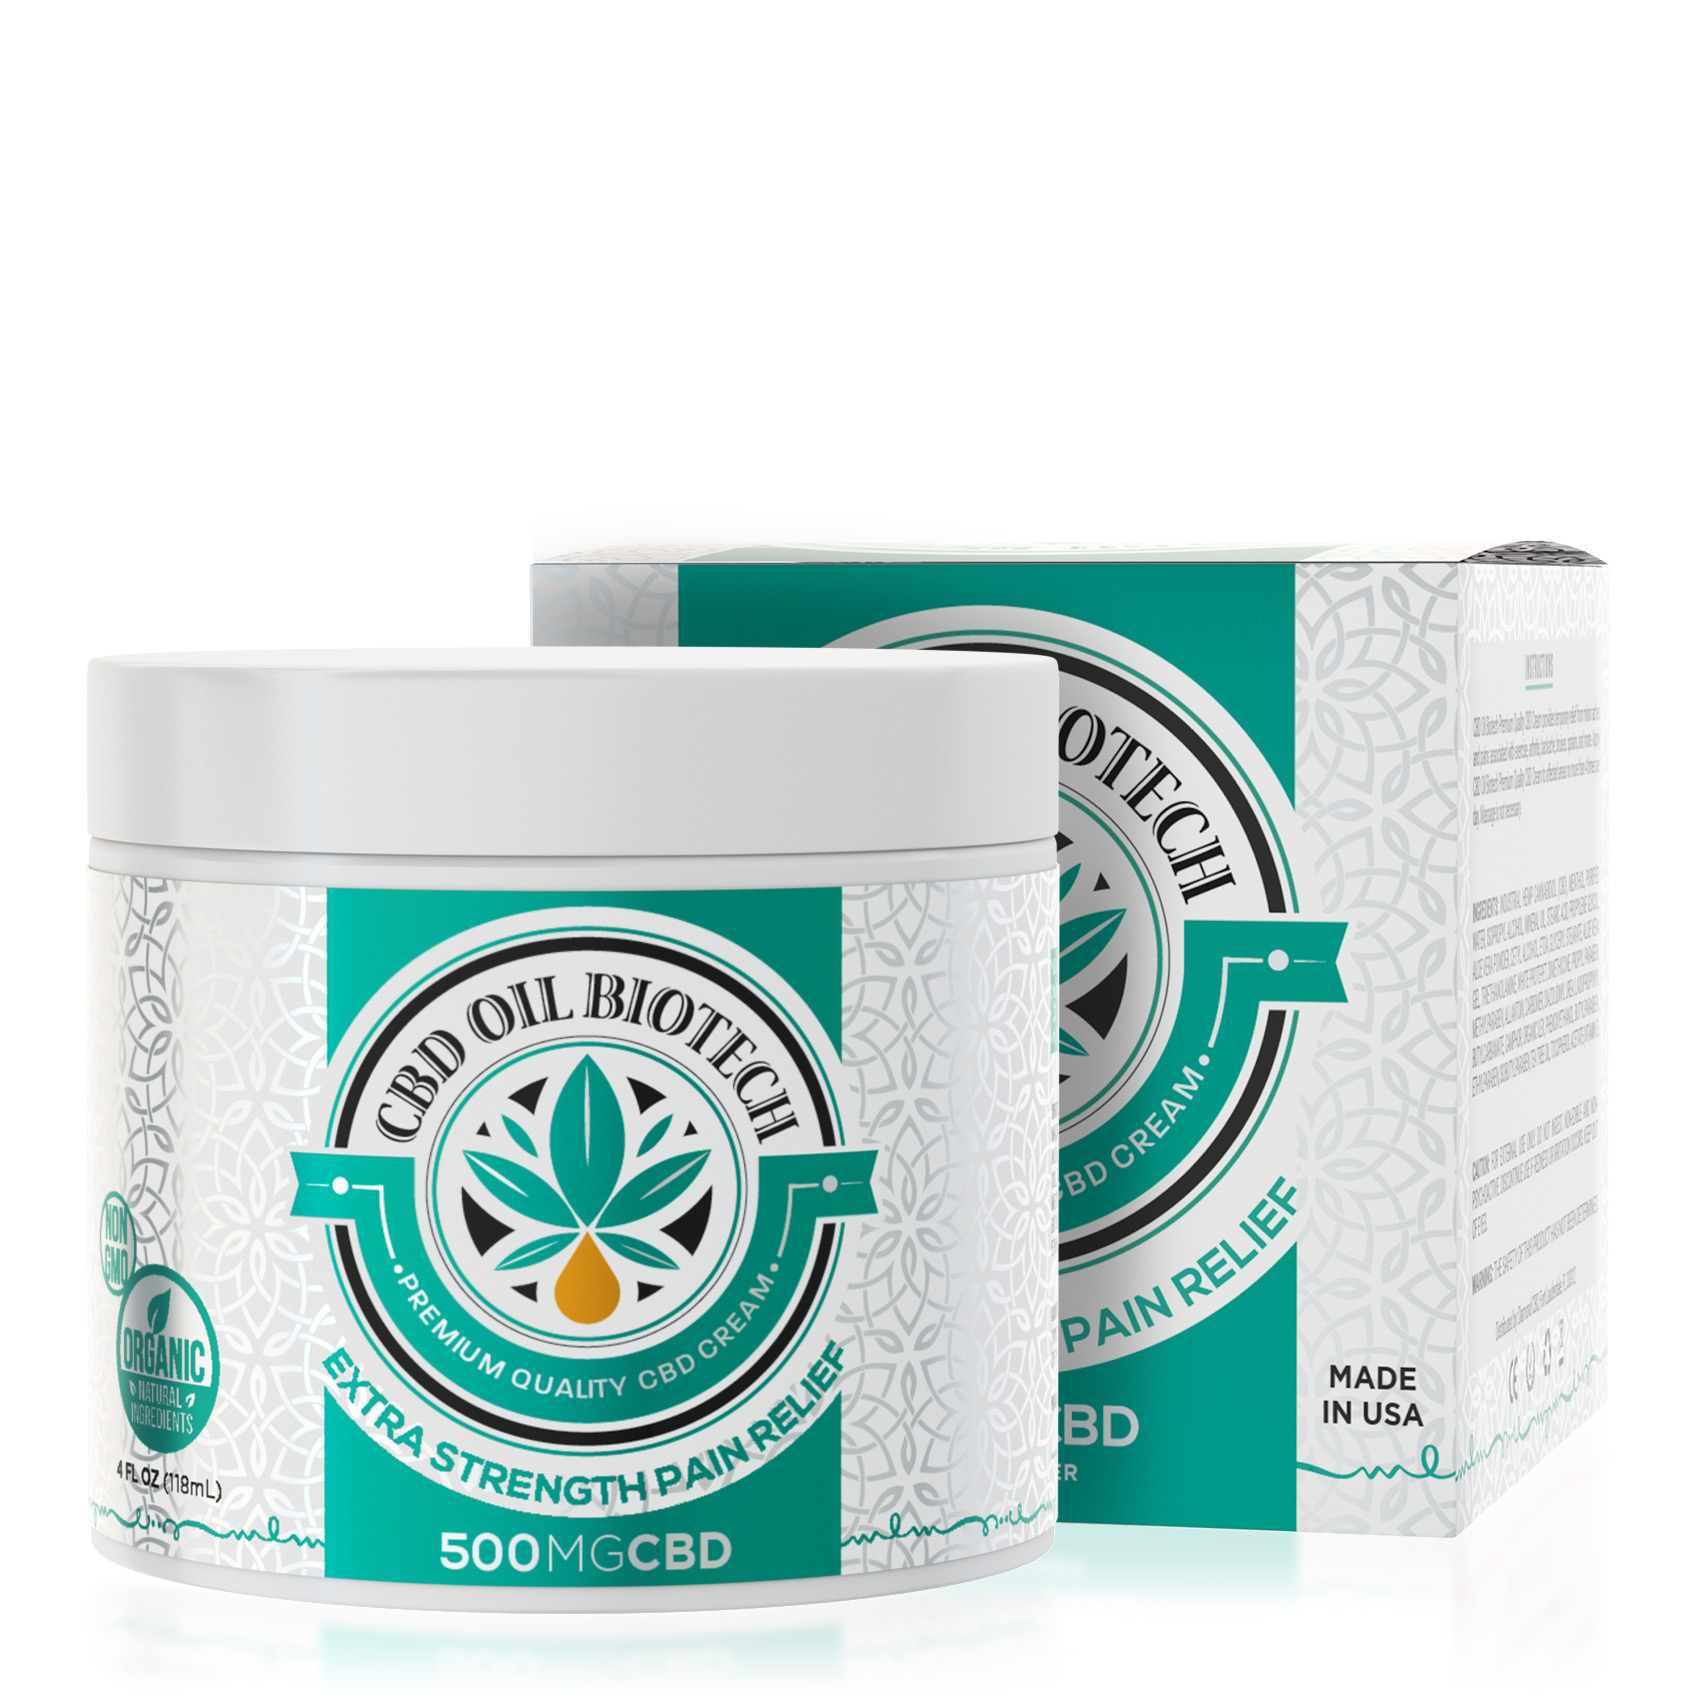 500mg CBD Oil Biotech Pain Creams - Buy 4 CBD Creams $29.99/Jar BEST VALUE - Diamond CBD